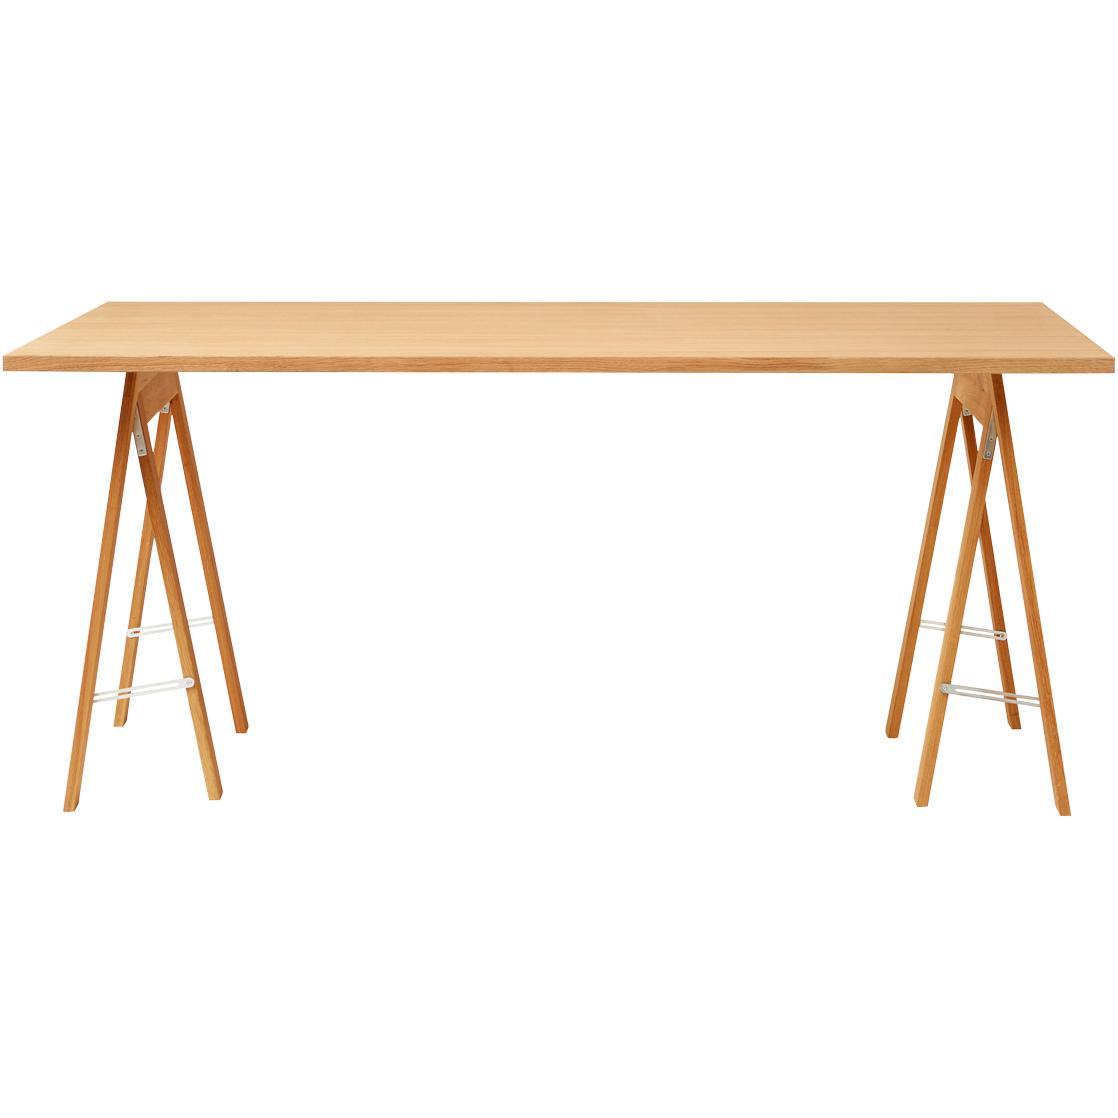 Form & Refine Linear Tabletop 165x88 Cm. Oak